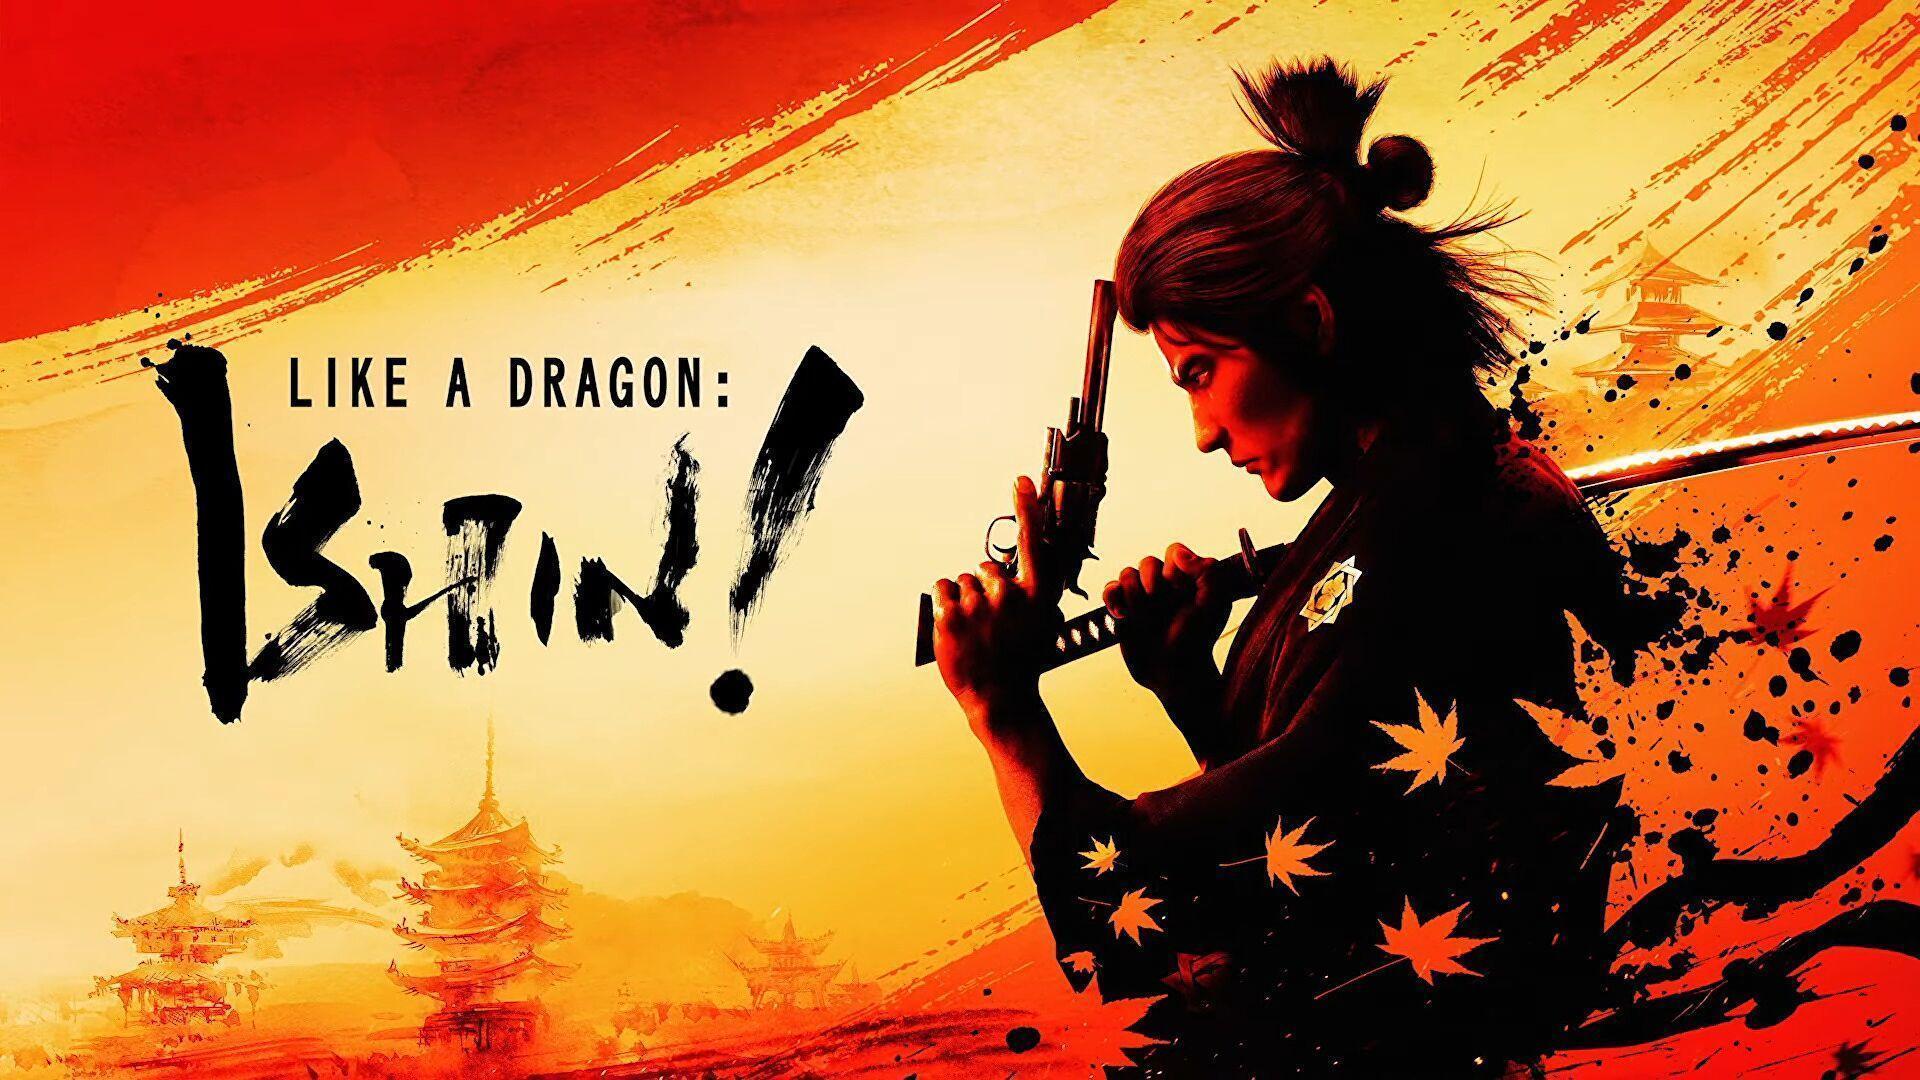 Agora você pode jogar a demo de Like a Dragon: Ishin! no PC e Xbox